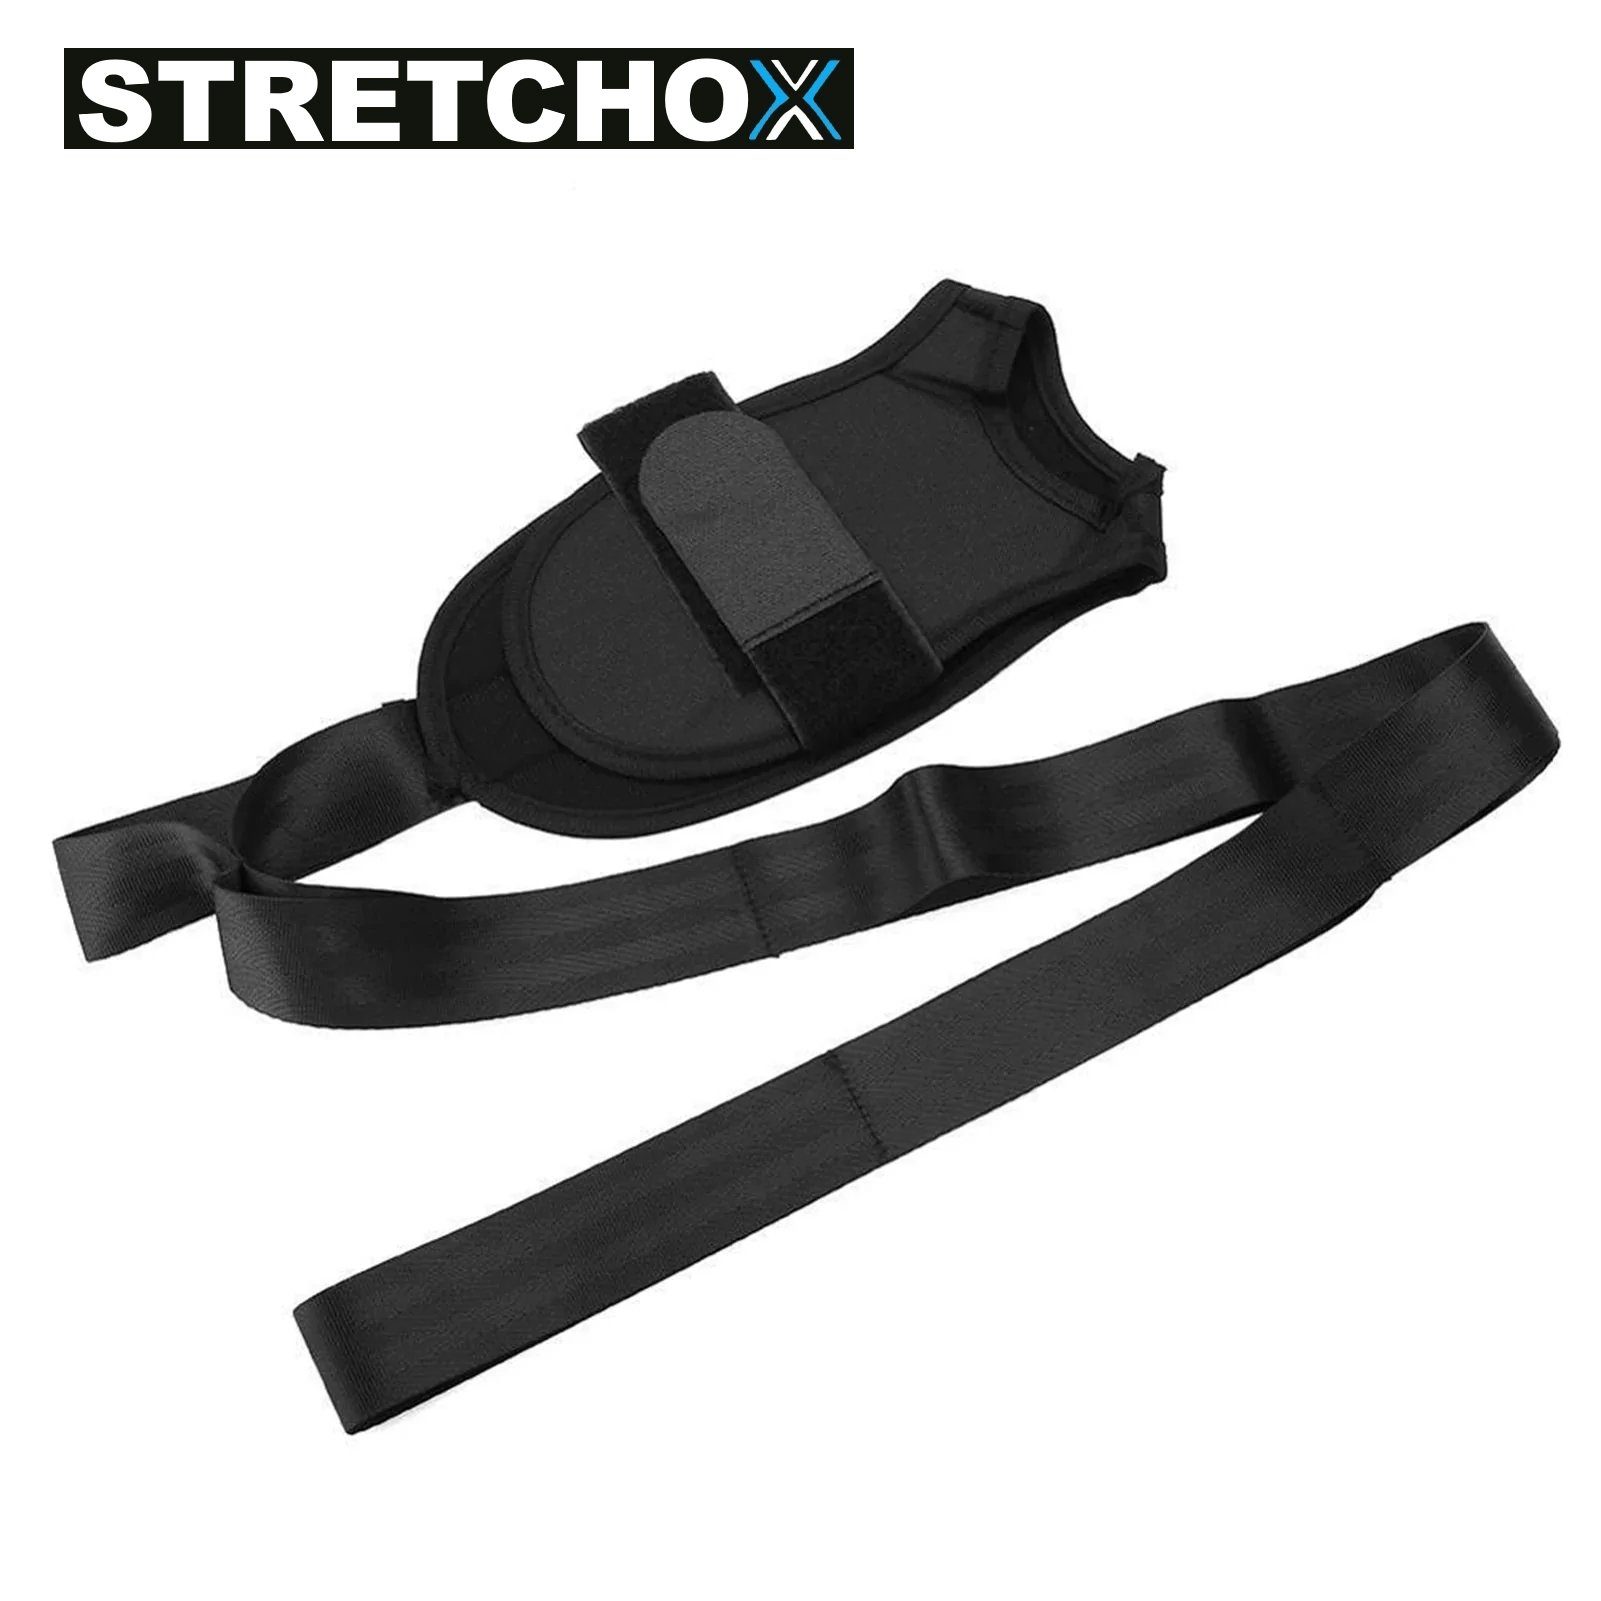 Belt Band Gurt, Dehnung Yoga Premium Bänderdehnung Stretching MAVURA Stretchband Fuß Bein Stretch Fitness Beintraining STRETCHOX